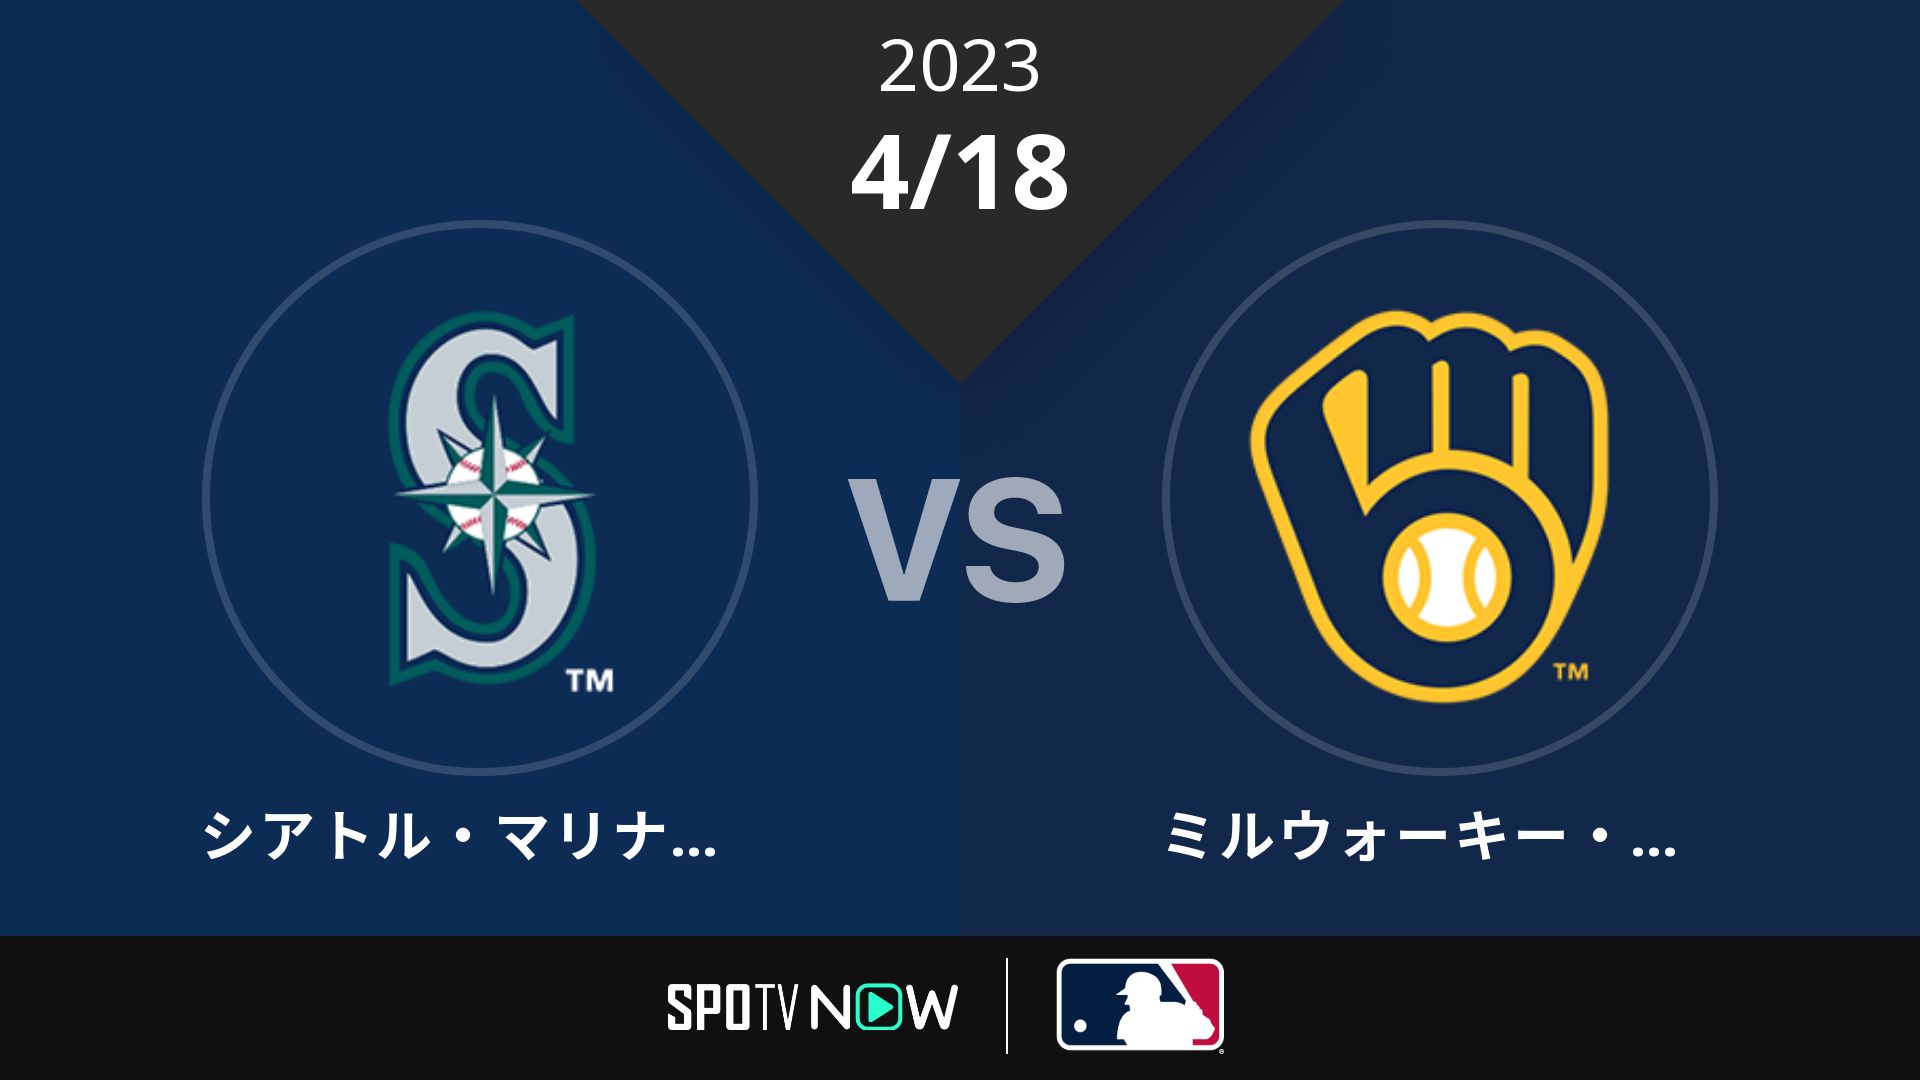 2023/4/18 マリナーズ vs ブリュワーズ [MLB]